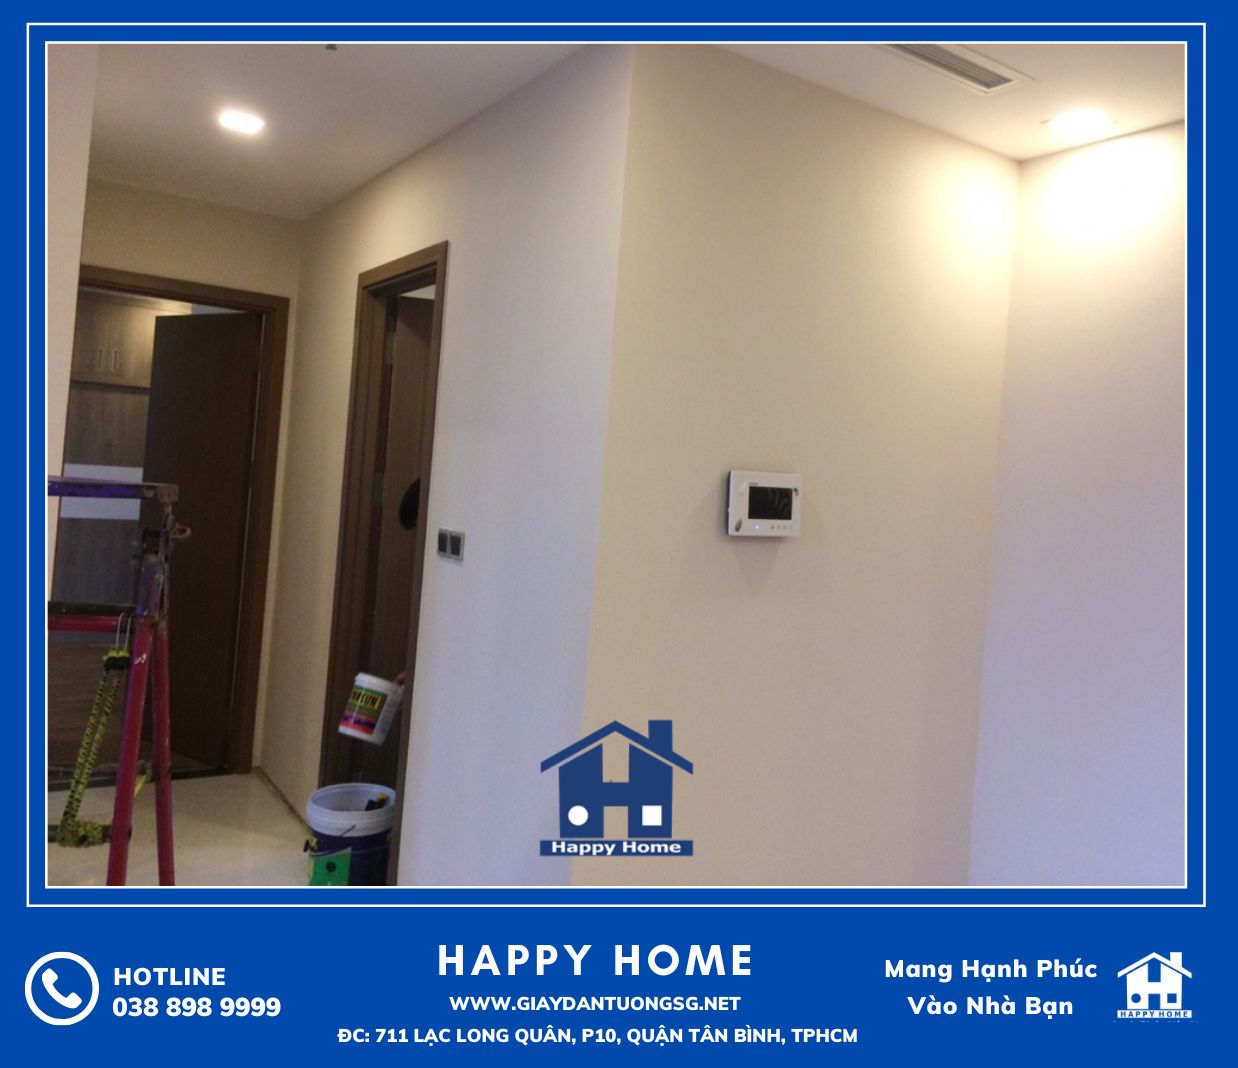 Happy Home là đơn vị đi đầu chuyên tư vấn, thiết kế cung cấp và thi công các sản phẩm giấy dán tường cho chung cư